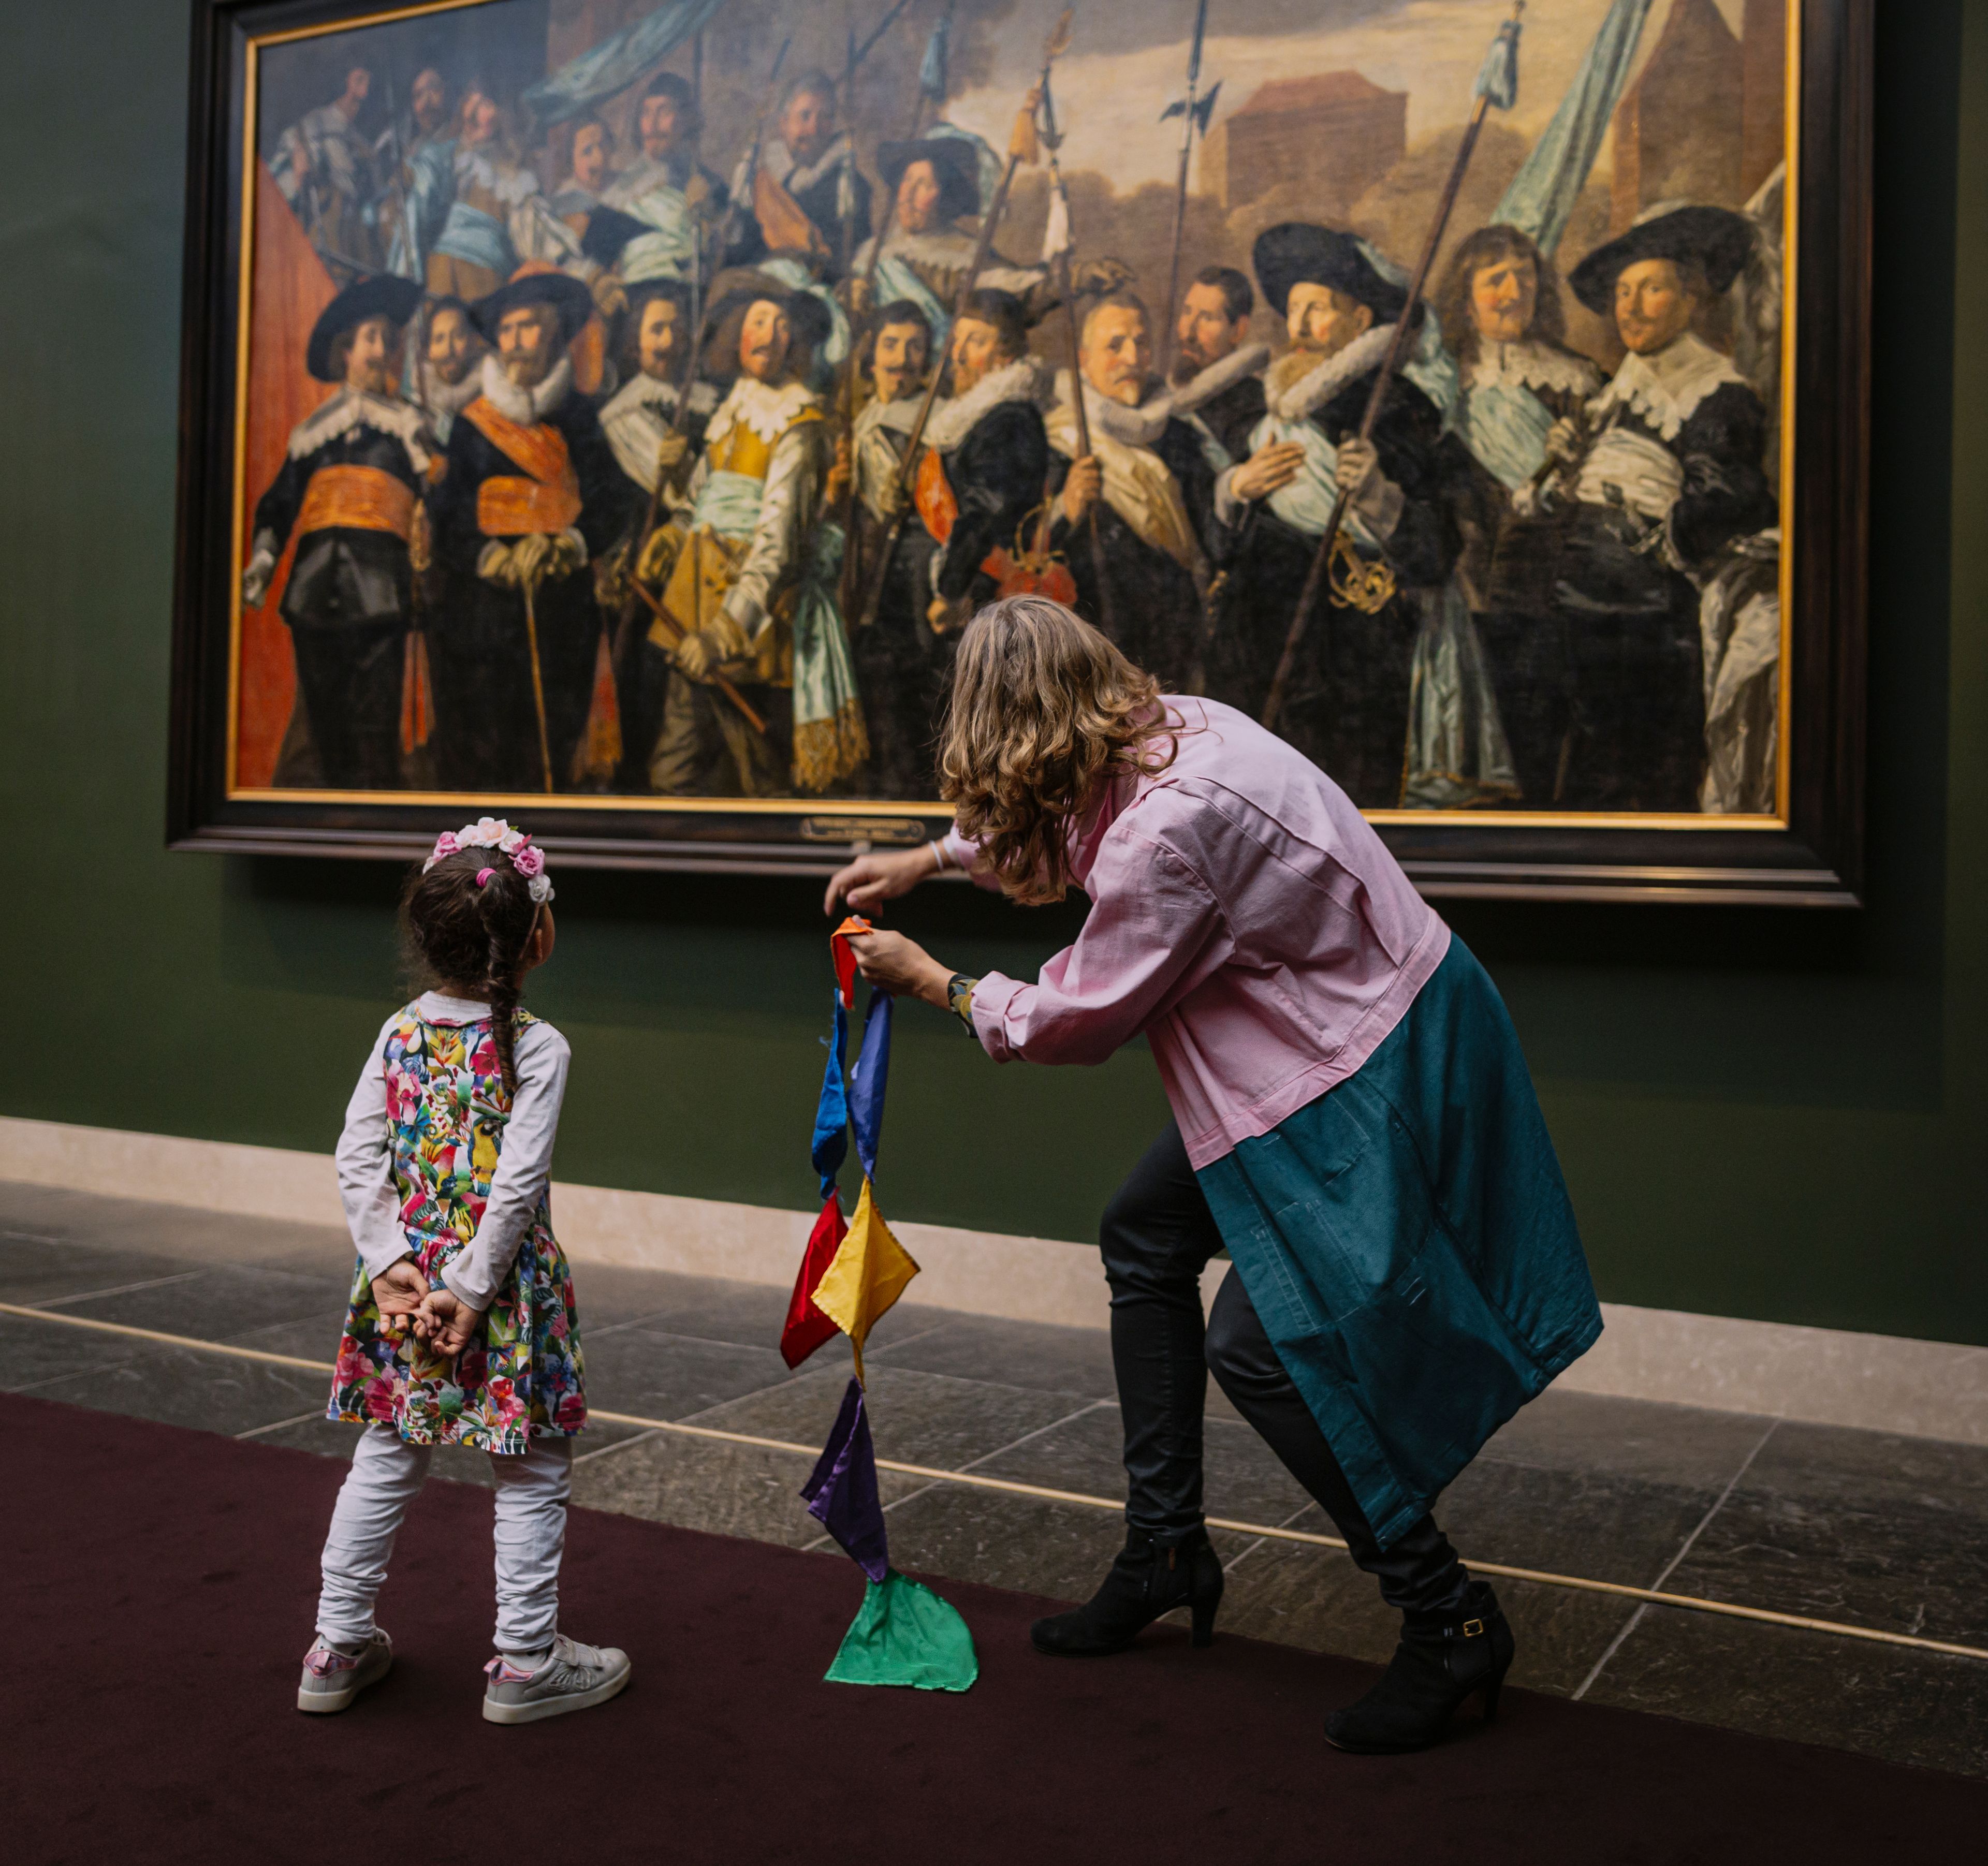 Rondleiding Sjaak Suppoost, kindje meet samen met de rondleider het grootste schilderij van het Frans Hals Museum op.